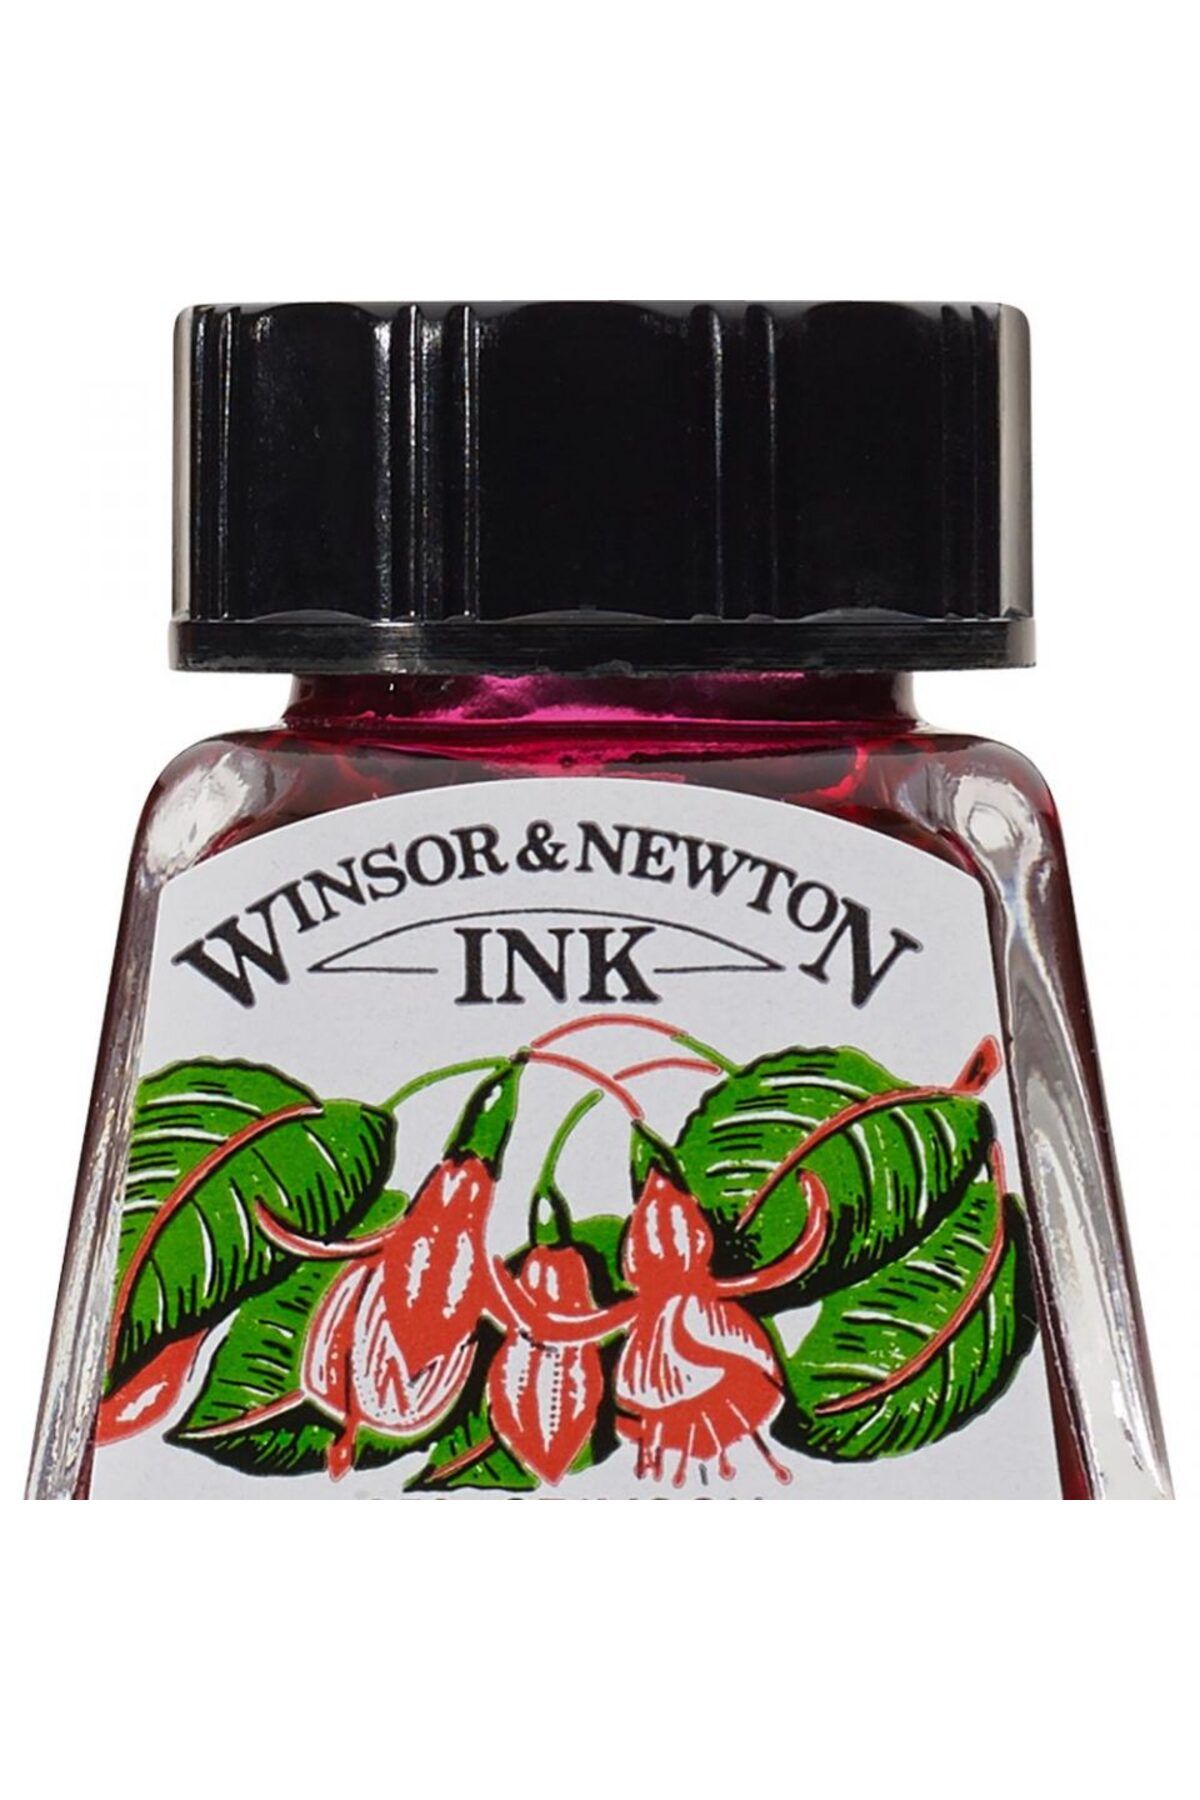 Winsor Newton Winsor & Newton Çini Mürekkebi 14ml - Crimson